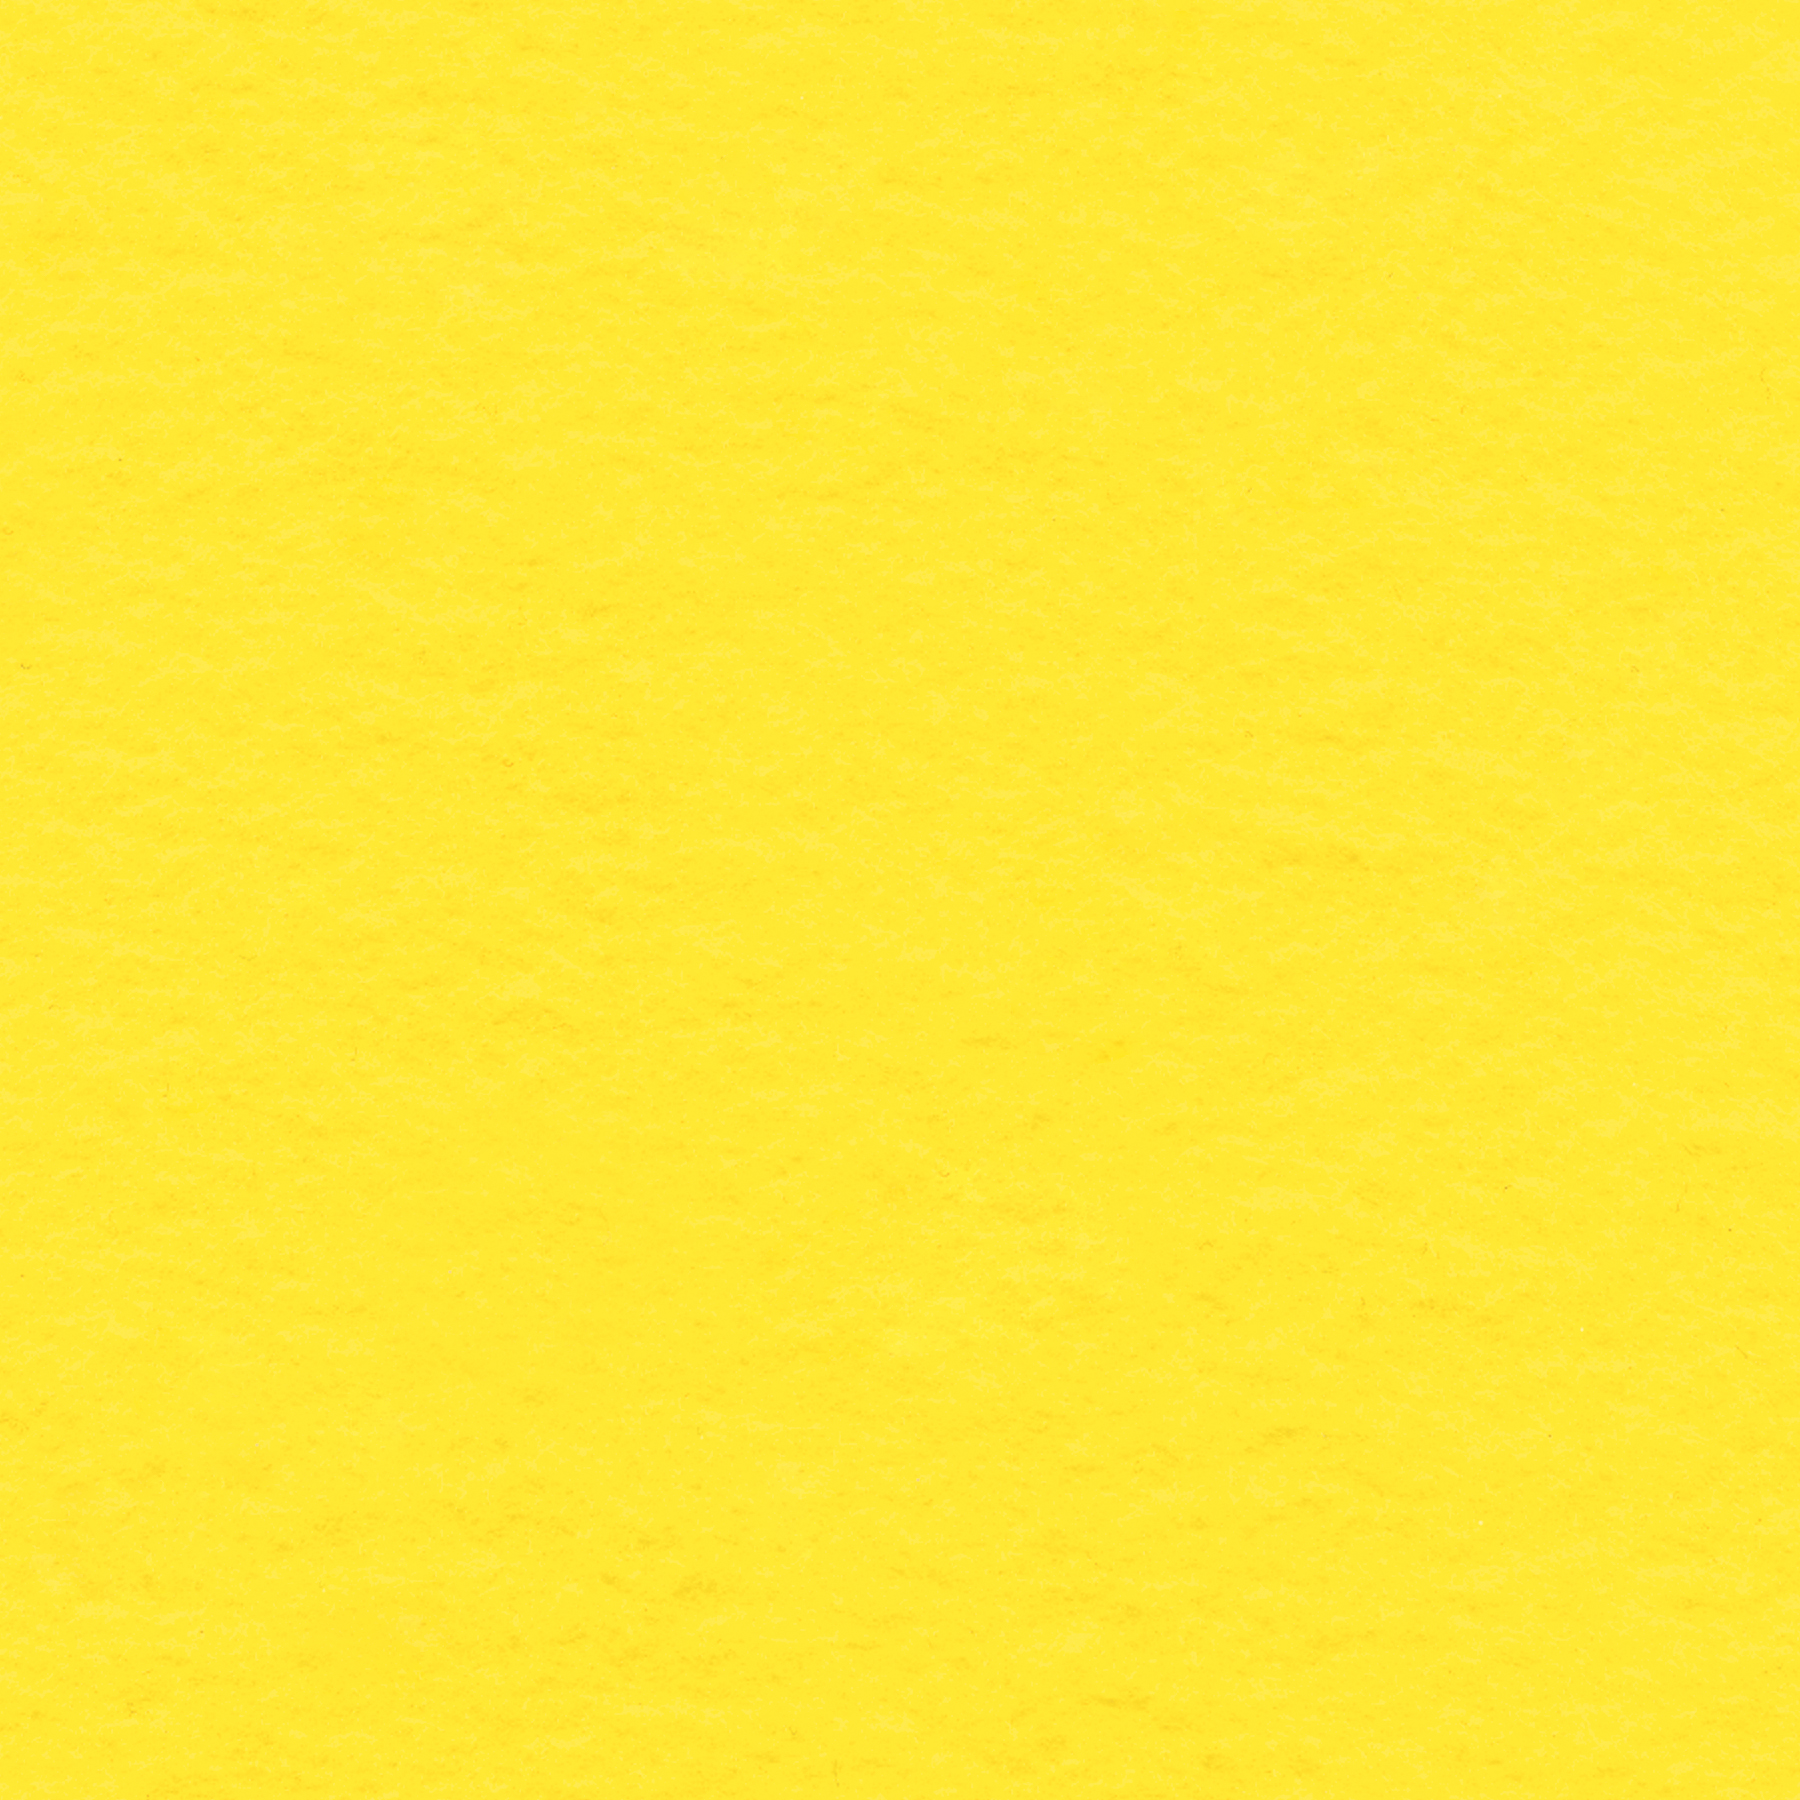 351 Yellow